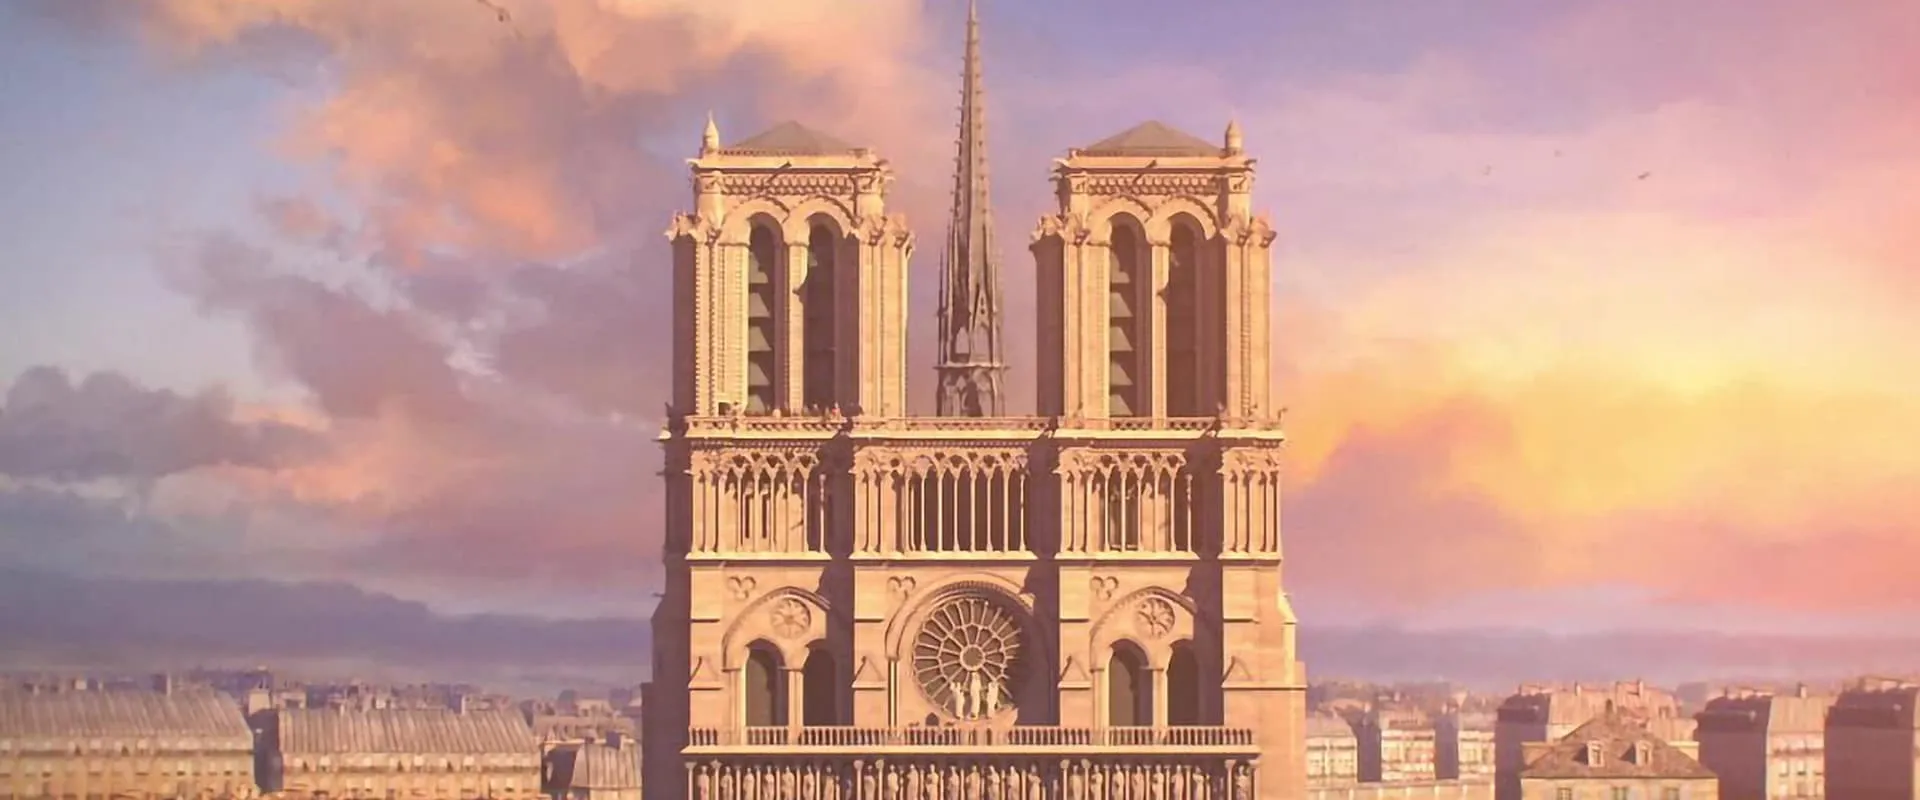 Notre-Dame de Paris, l'épreuve des siècles (2018)